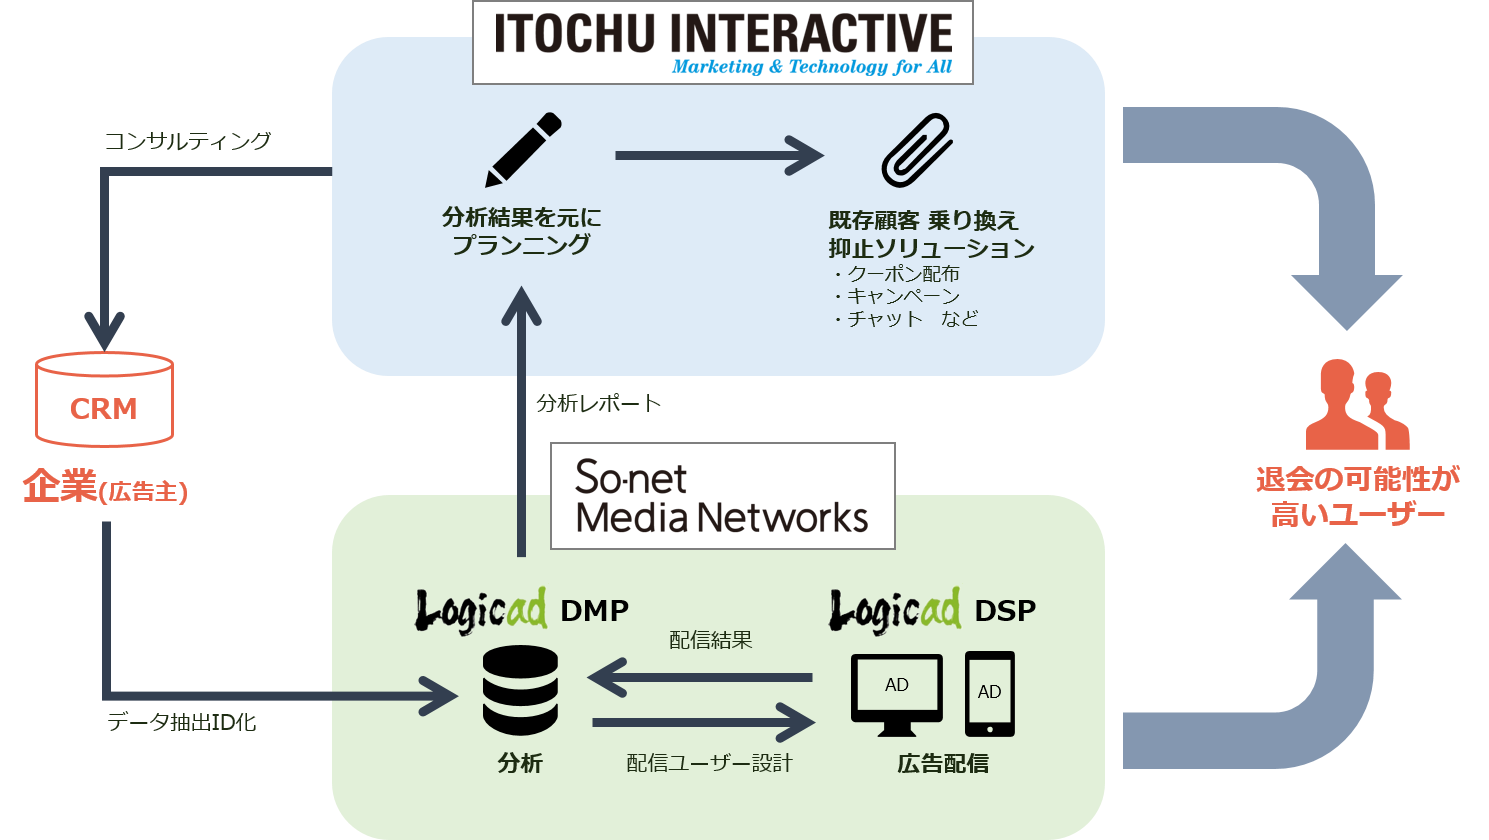 ソネット・メディア・ネットワークス、伊藤忠インタラクティブと共同でDMPを利用したデジタルマーケティング分野で協業開始